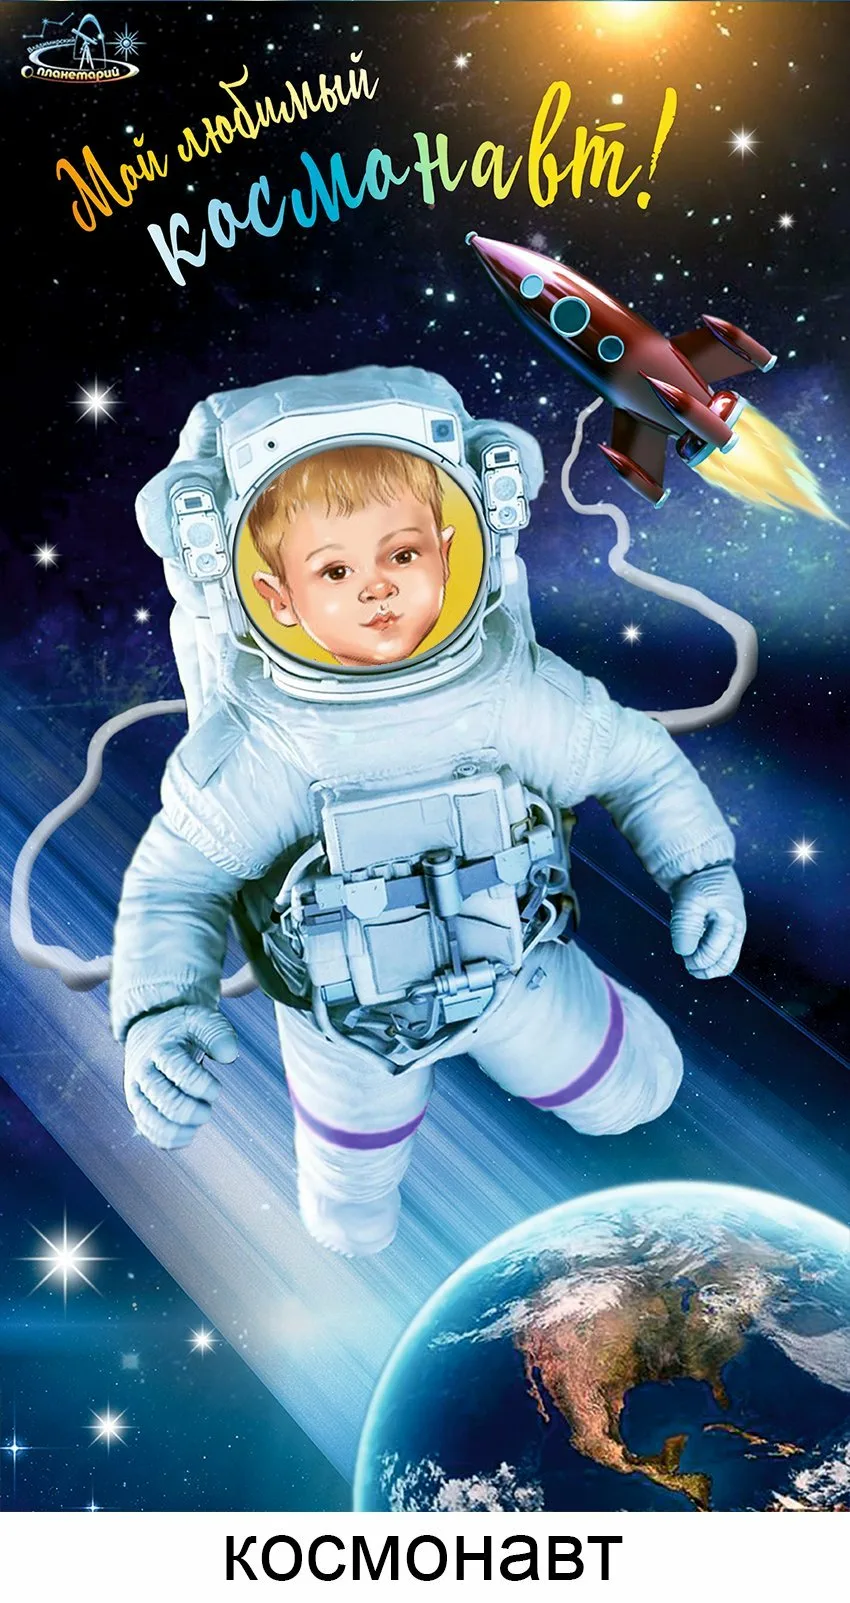 Космический день рождения. Космическая открытка с днем рождения. Космическое поздравление. Космическое поздравление с днем рождения.